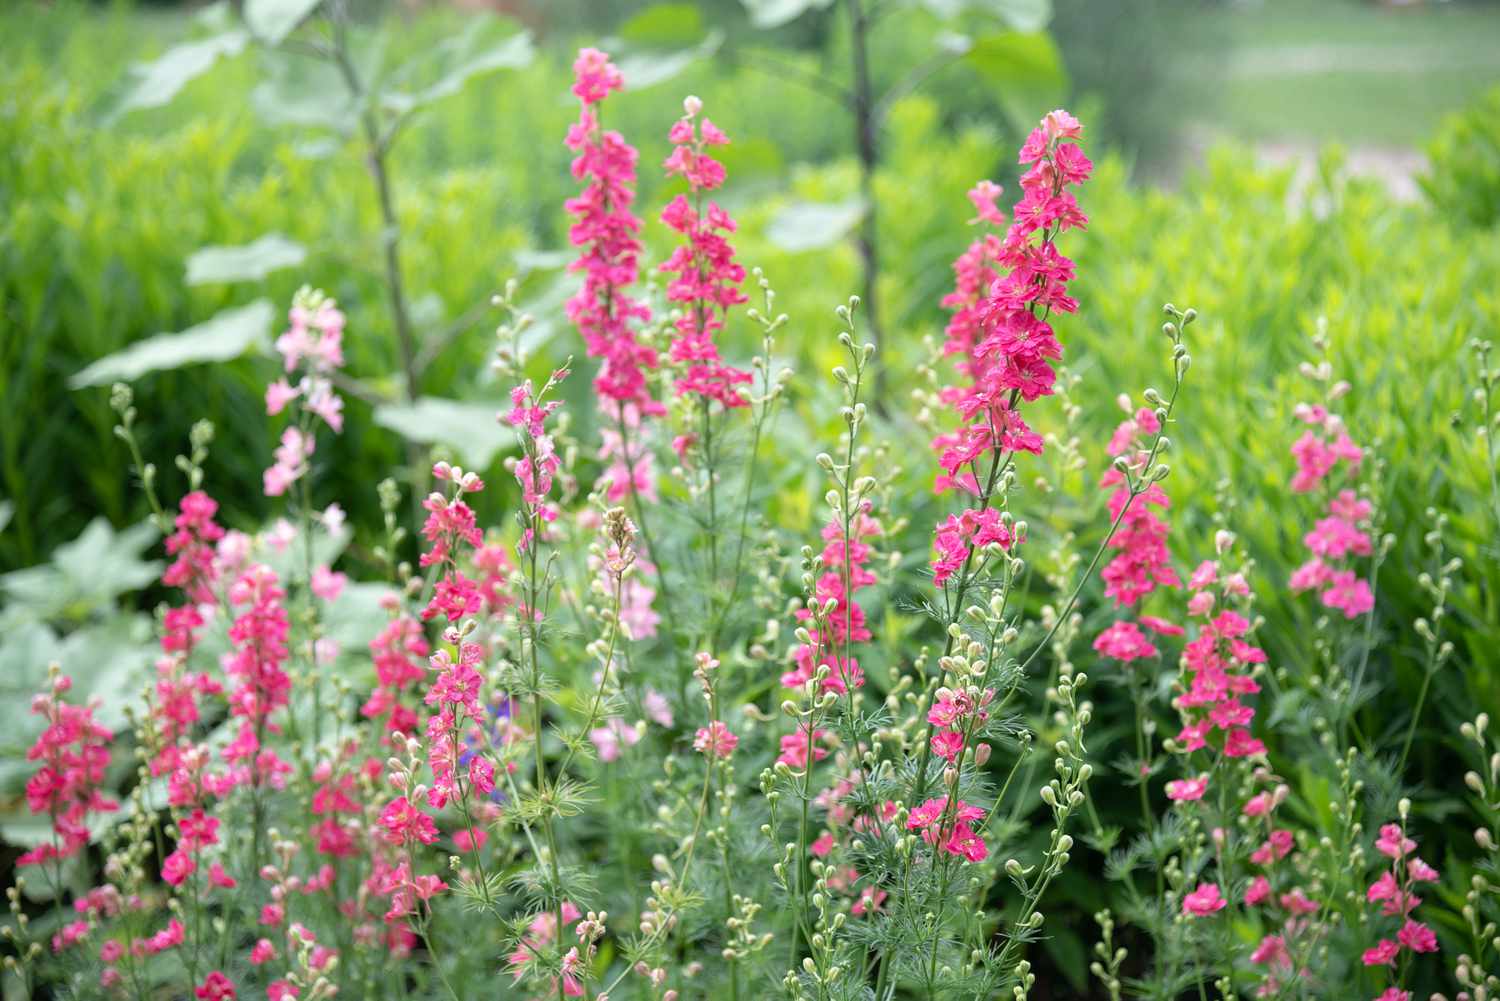 Plantas Larkspur de tallos altos con flores brillantes y de color rosa claro